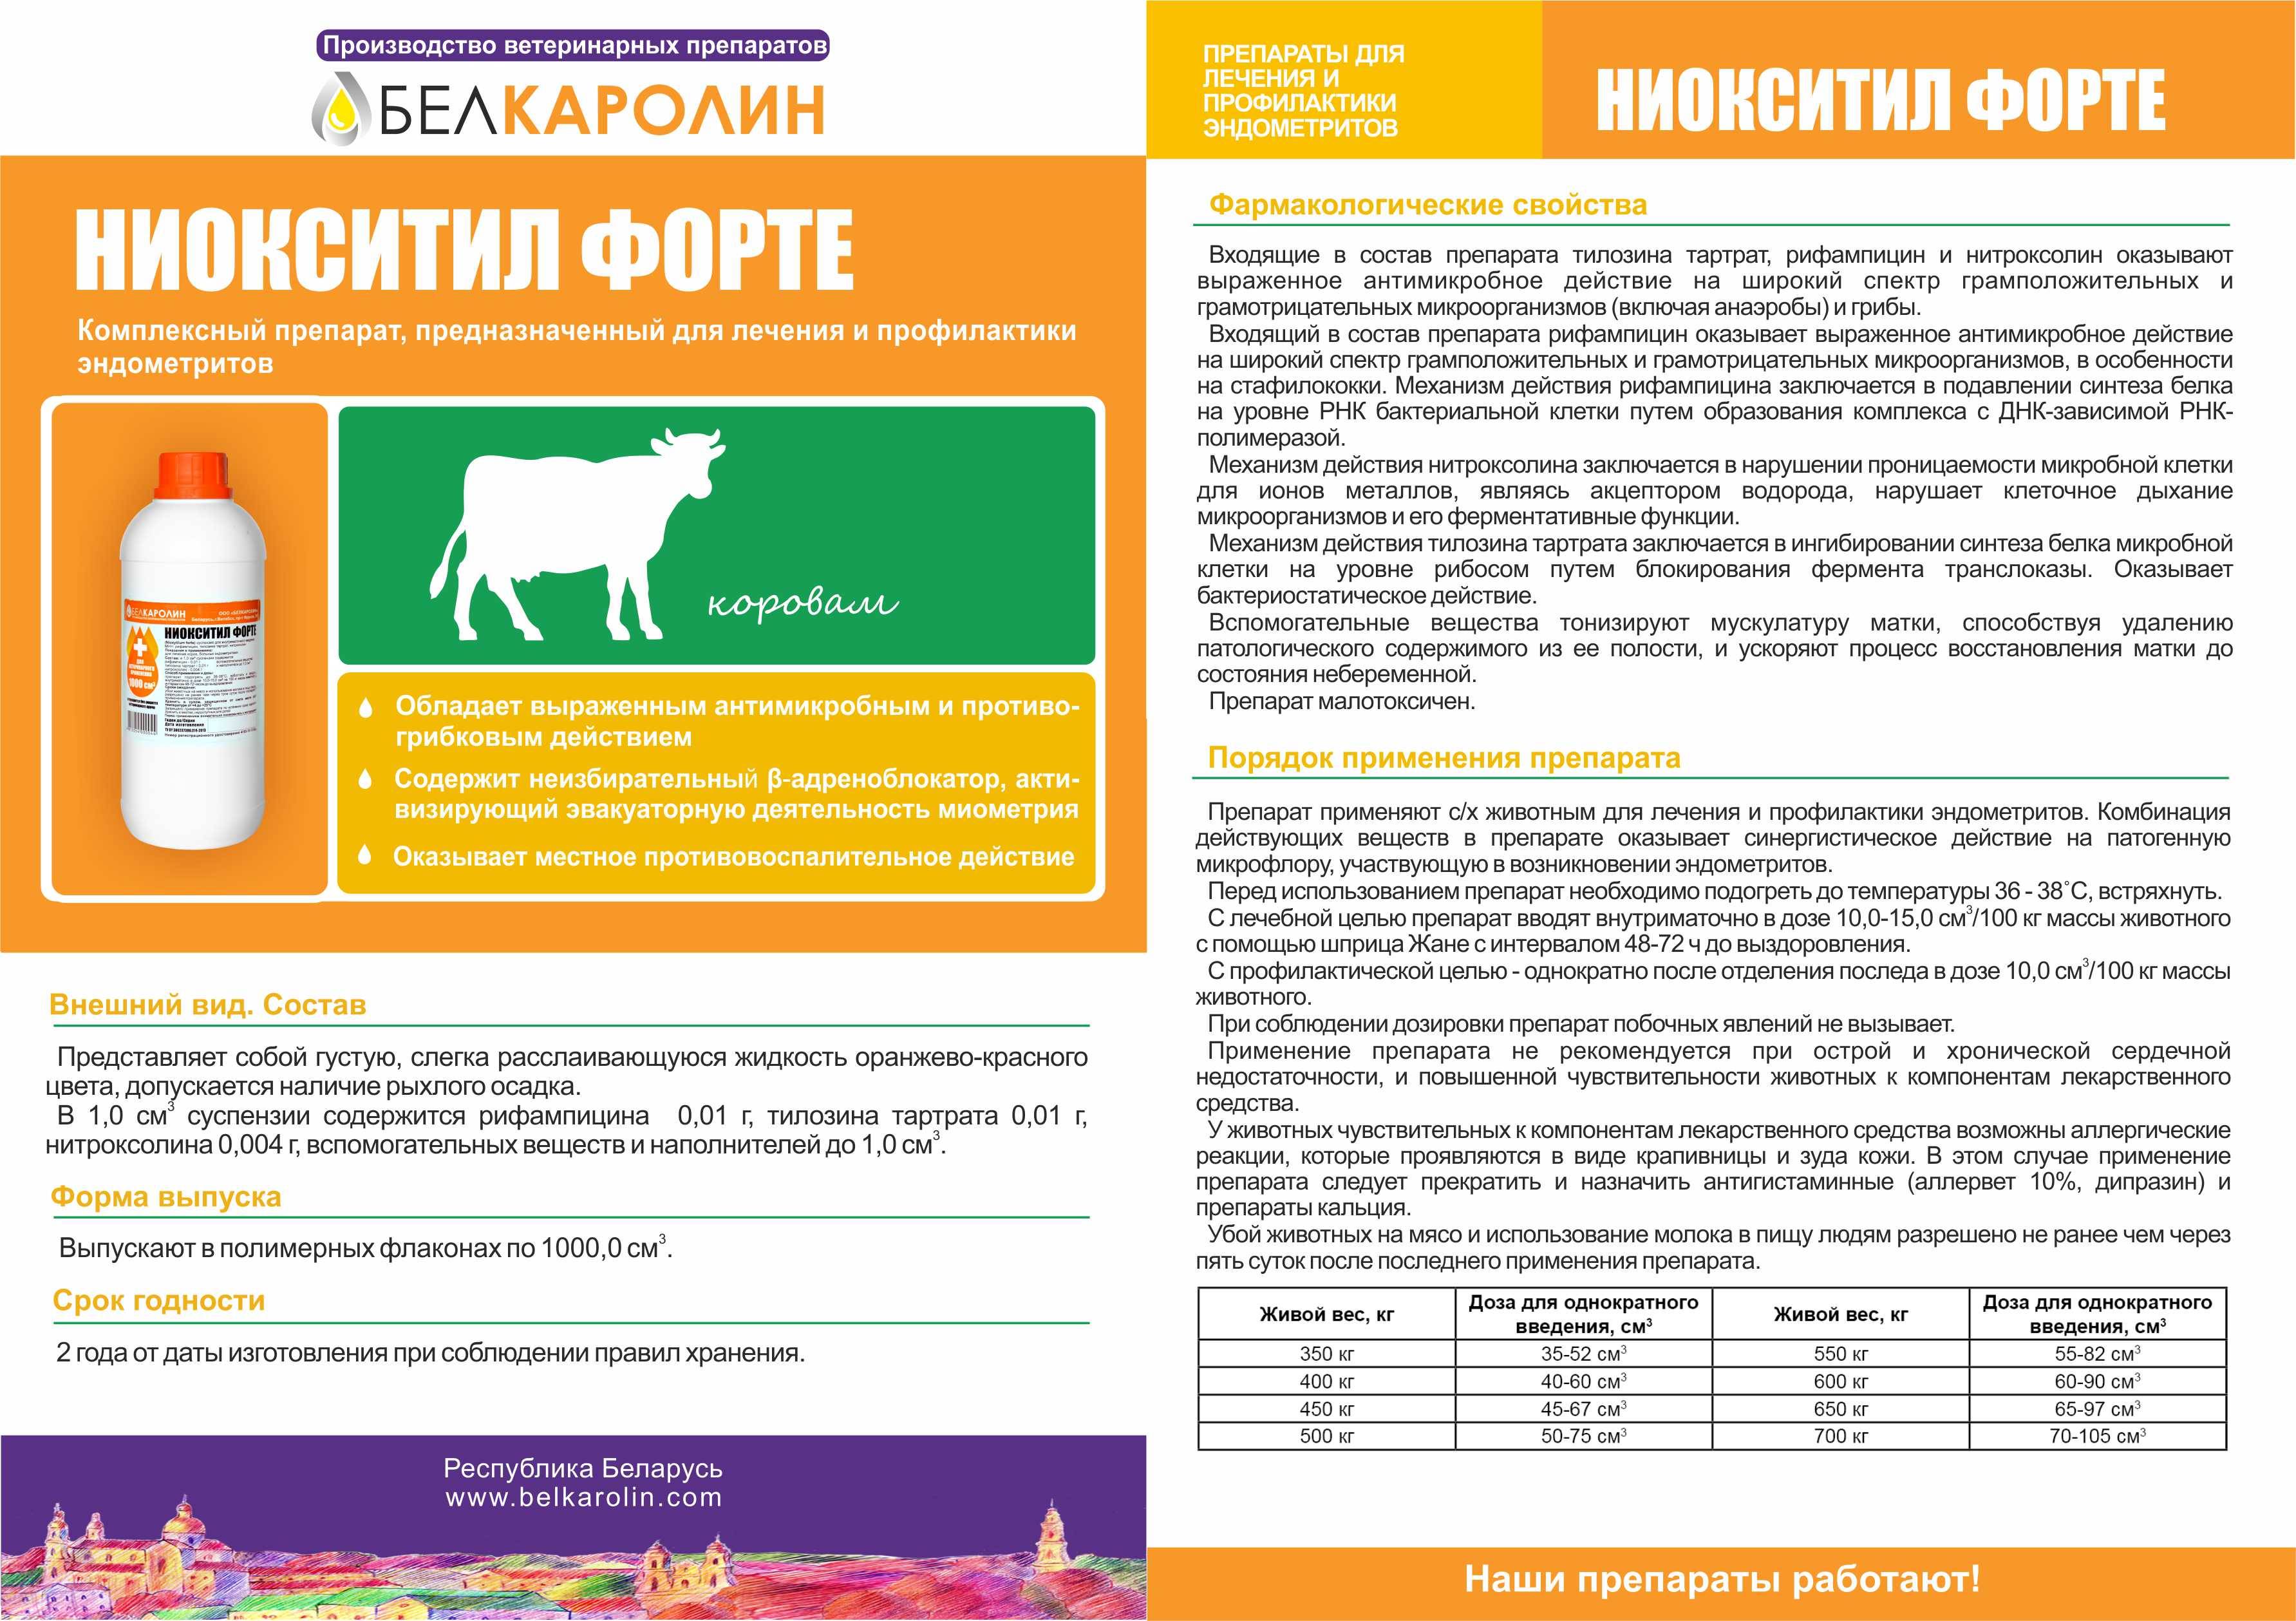 Доксатиб: подробная инструкция по применению в ветеринарии